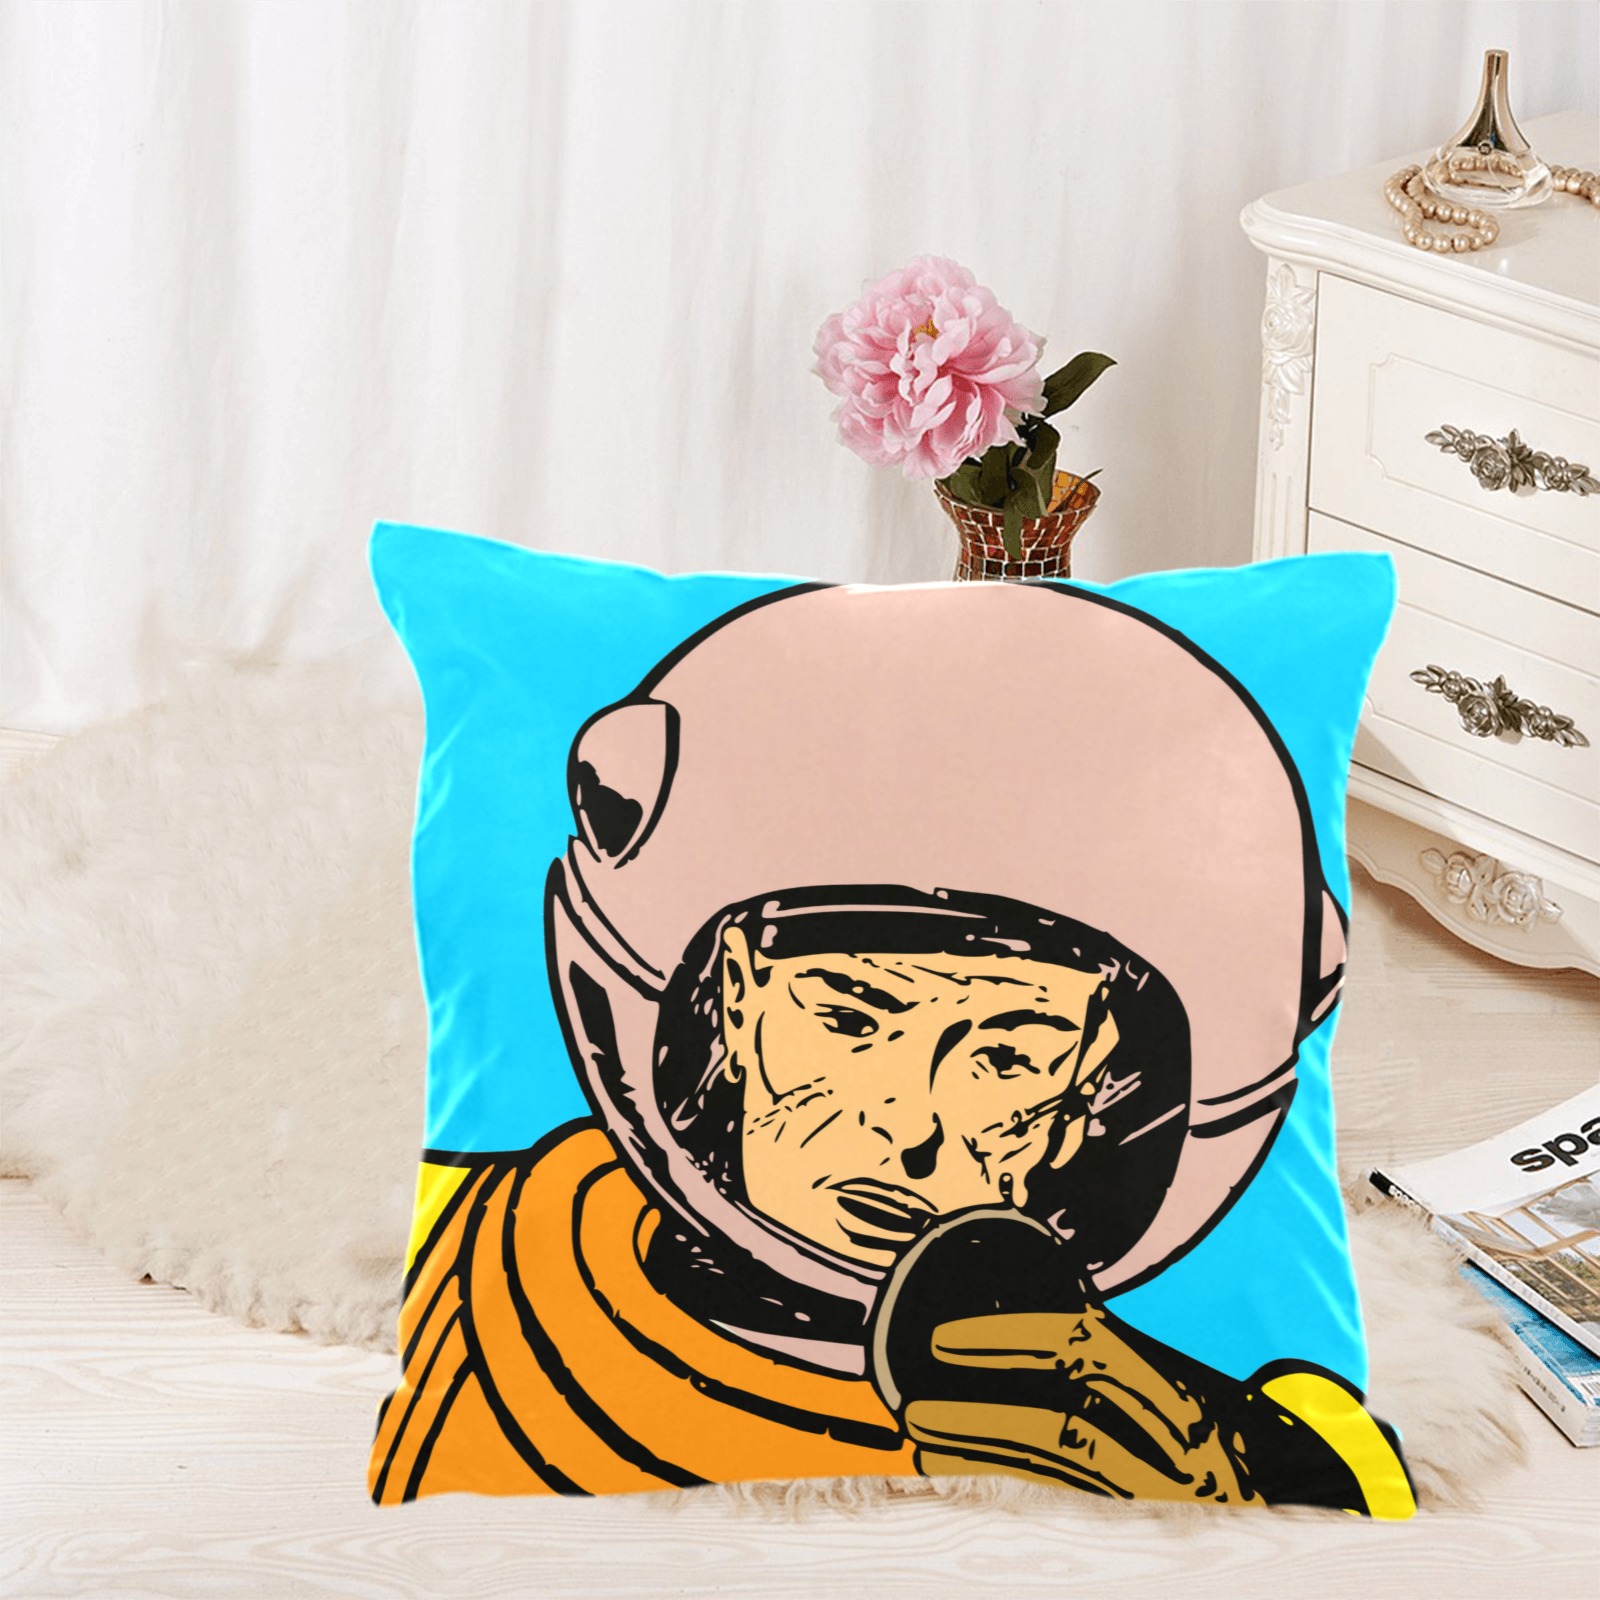 astronaut Custom  Pillow Case 18"x18" (one side) No Zipper